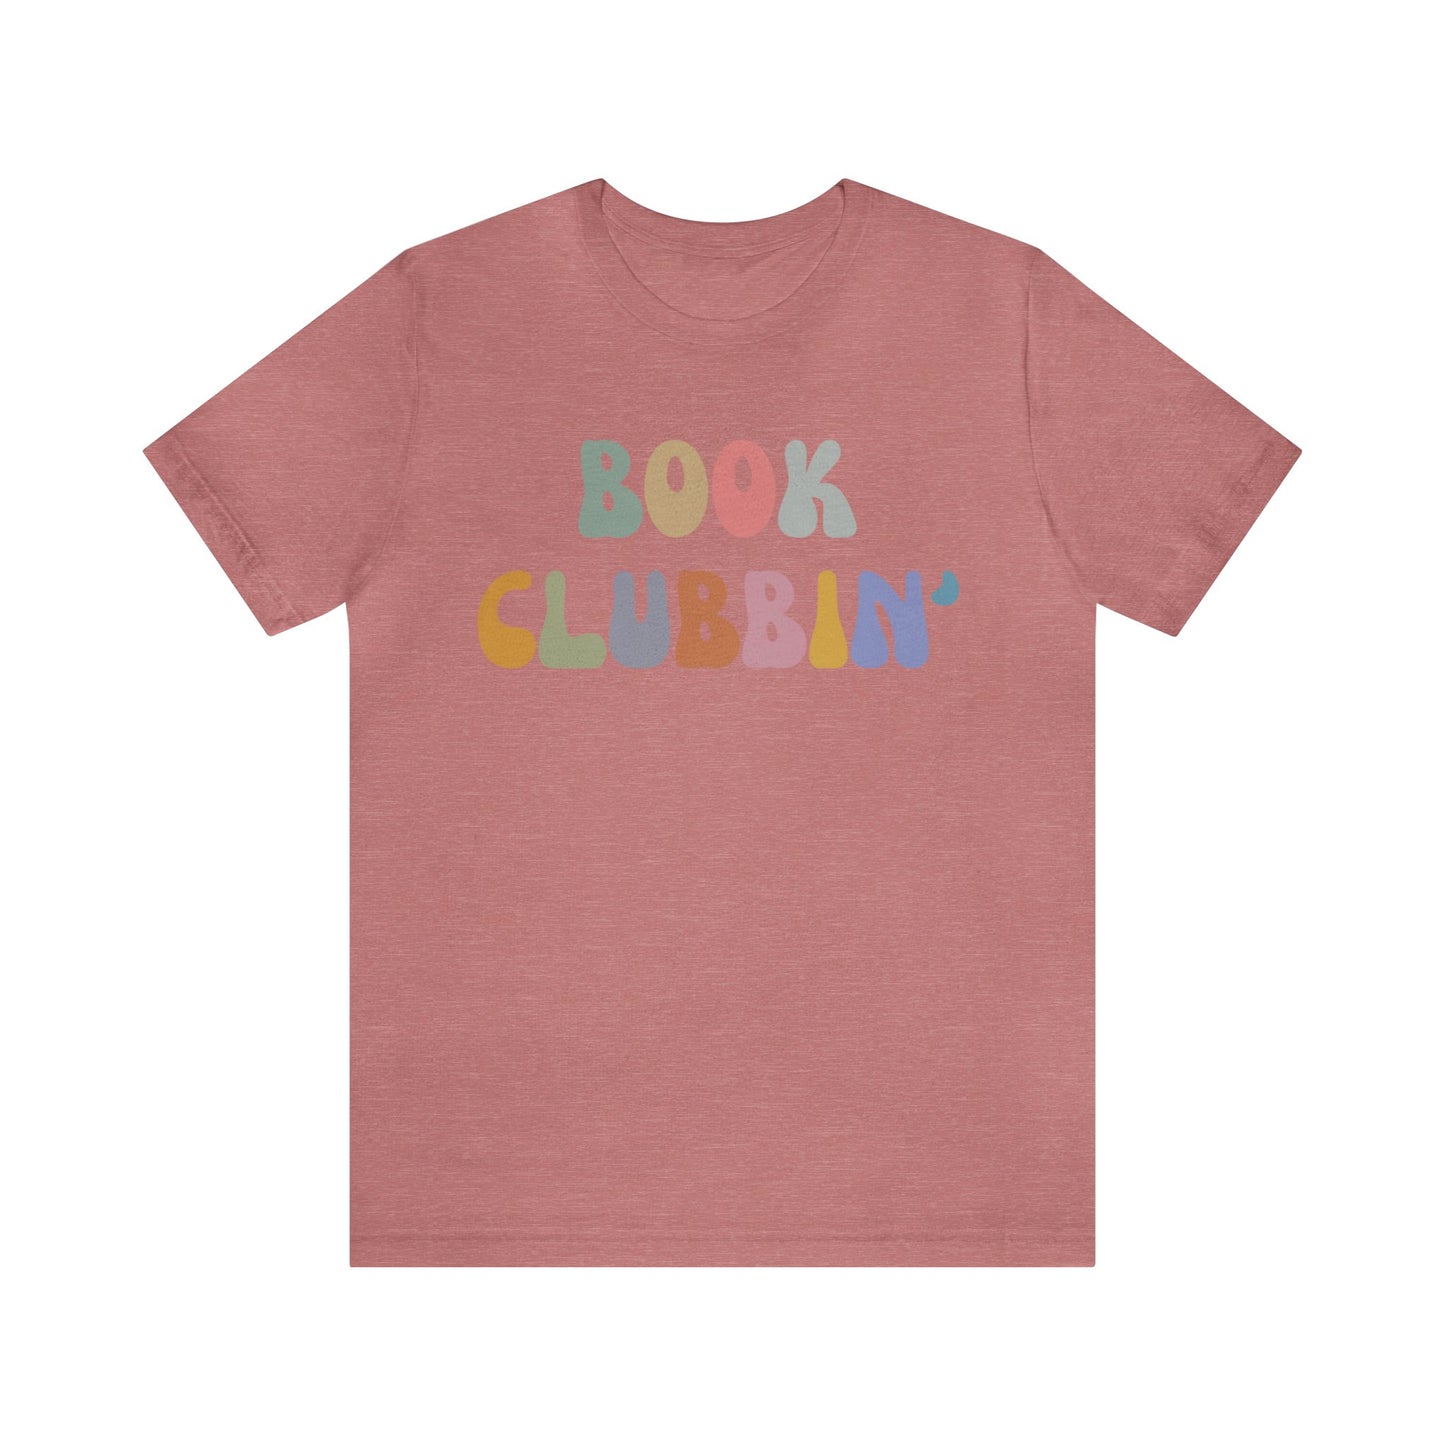 Book Clubbin' Shirt, Librarian Shirt for Bibliophile, Shirt for Teacher, Book Lovers Club Shirt, Book Nerd Shirt, Bookworm Gift, T1171